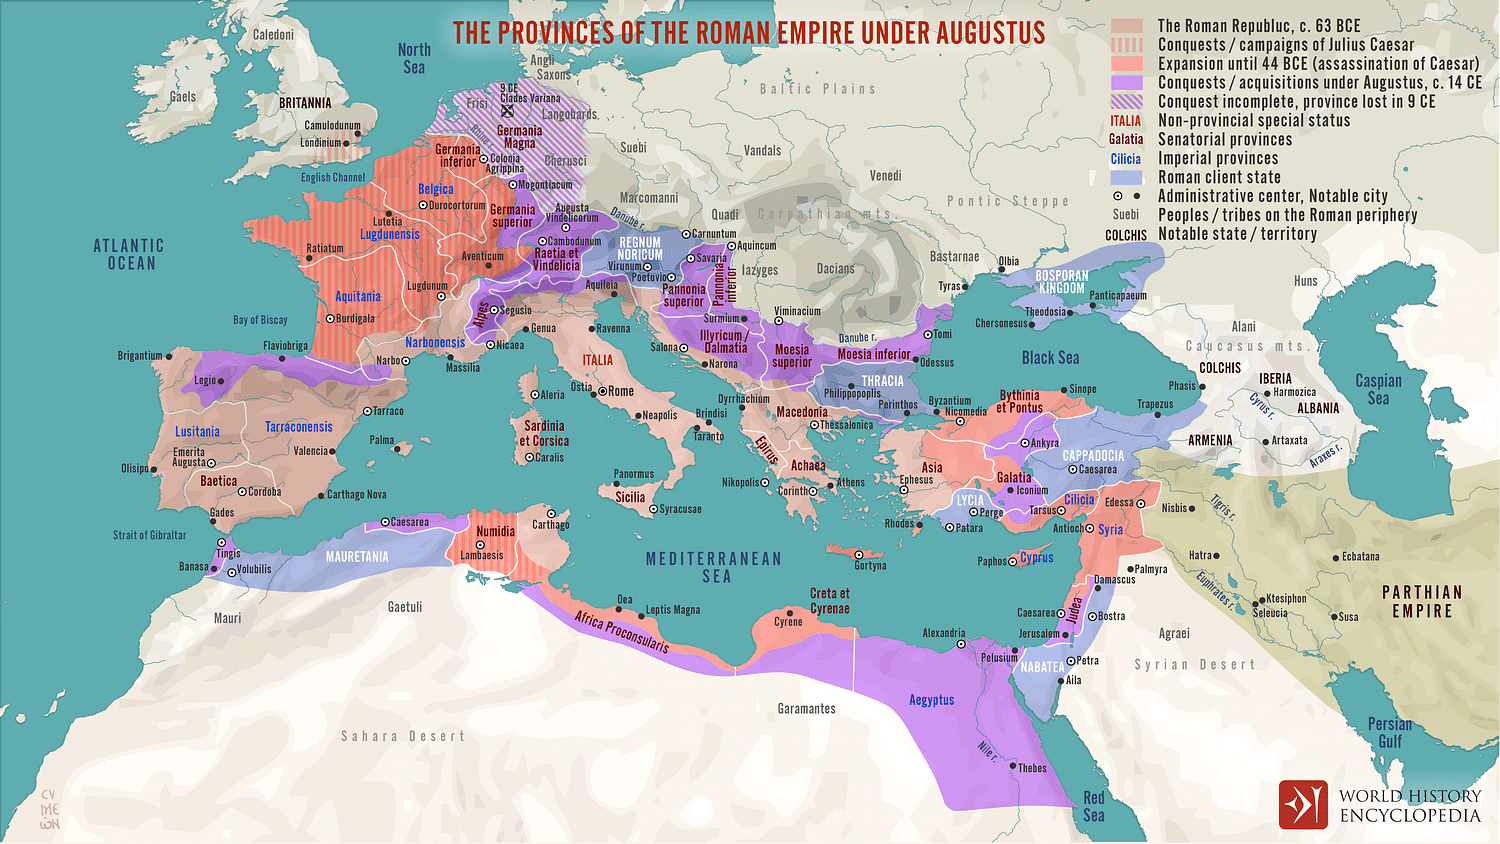 alexander the great empire vs roman empire